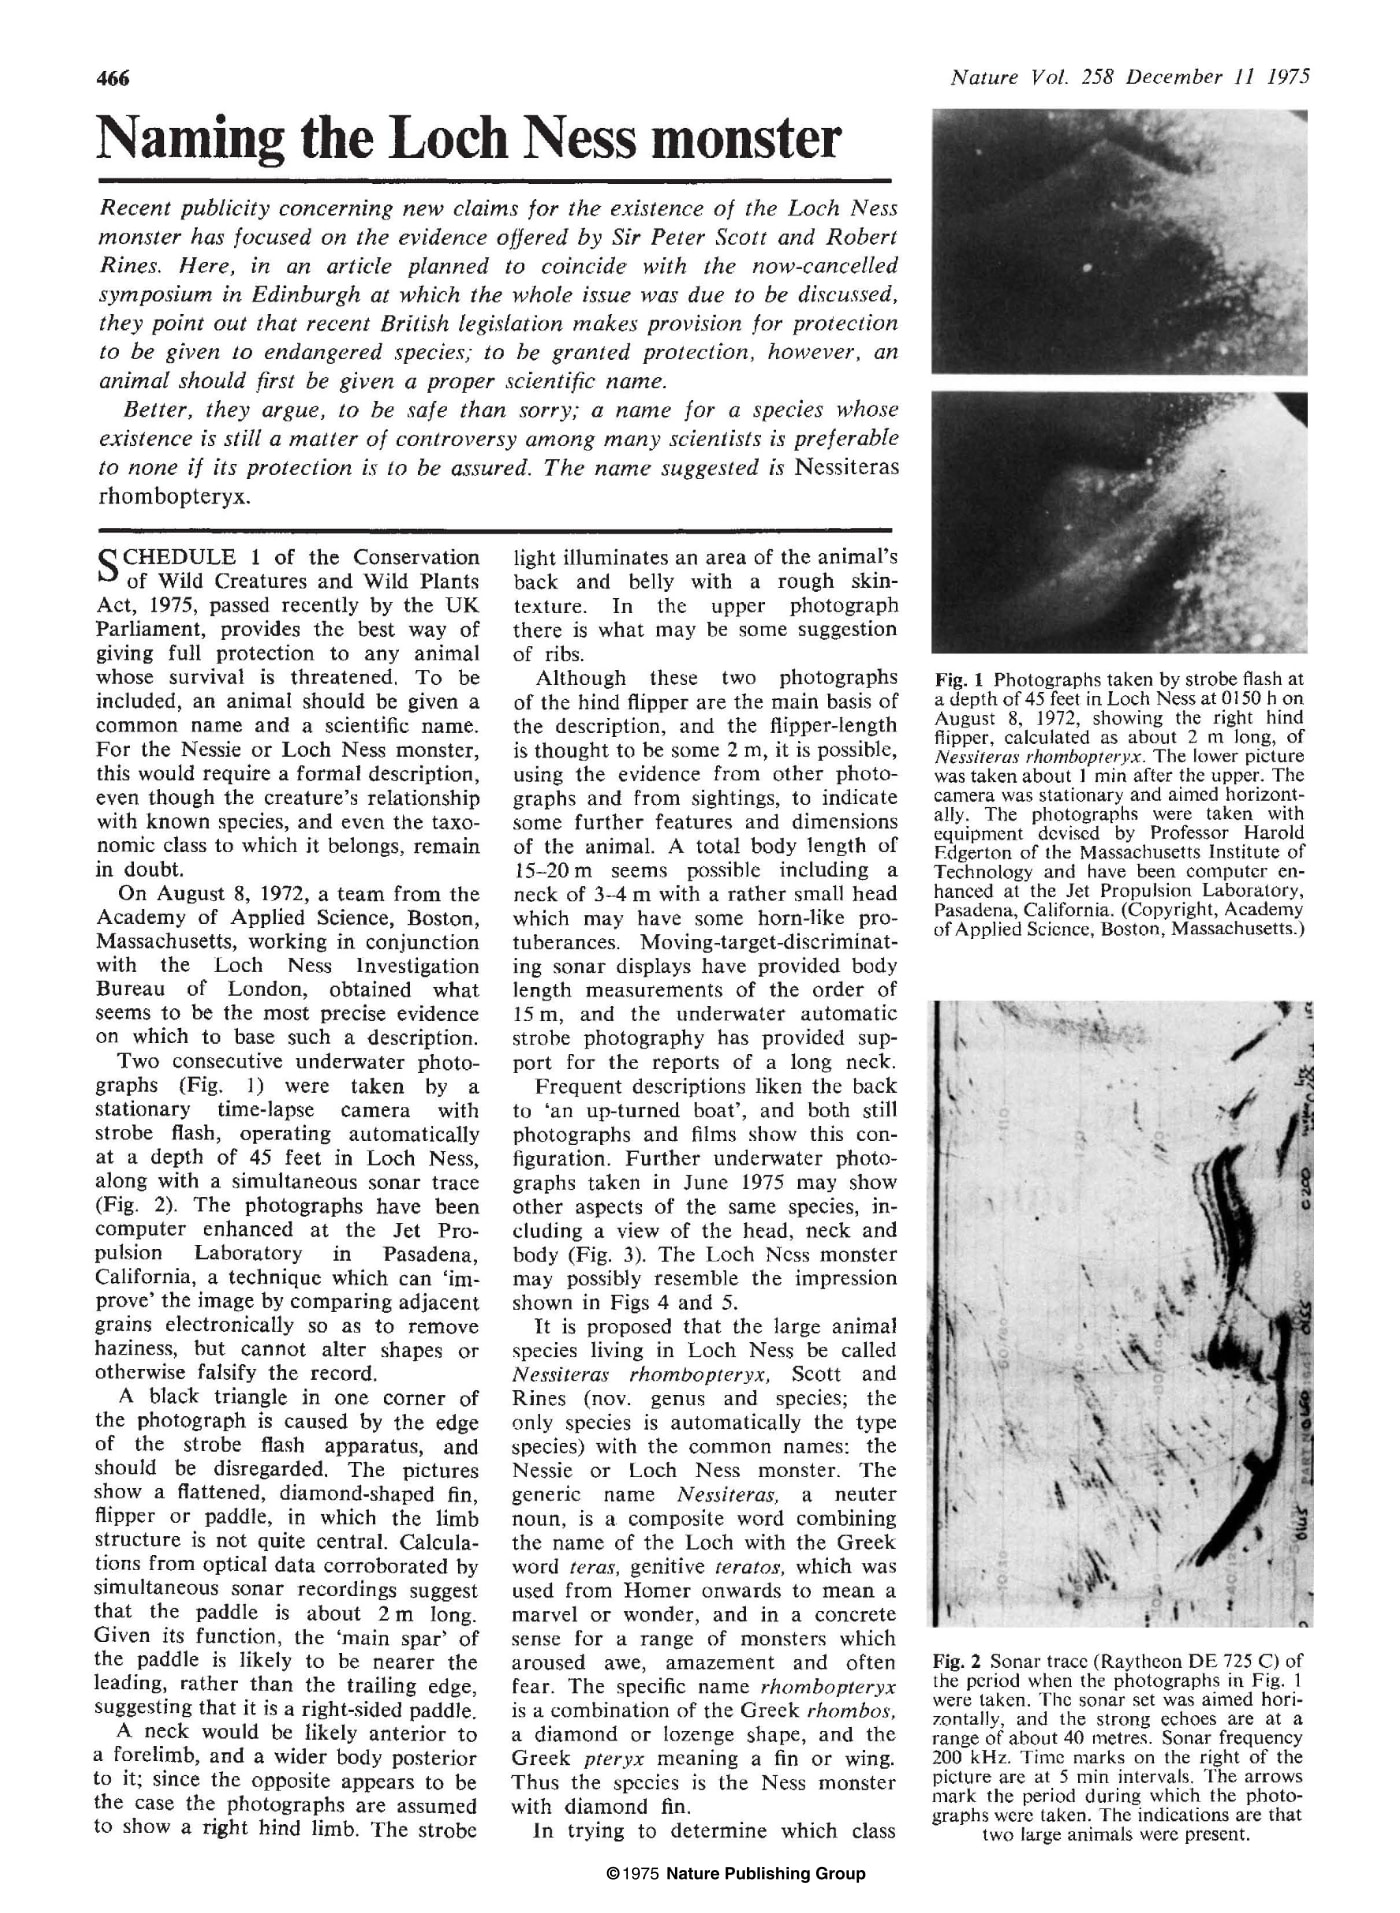 Primera página del artículo de 'Nature' de diciembre de 1975 en el que se bautiza al monstruo del lago Ness.